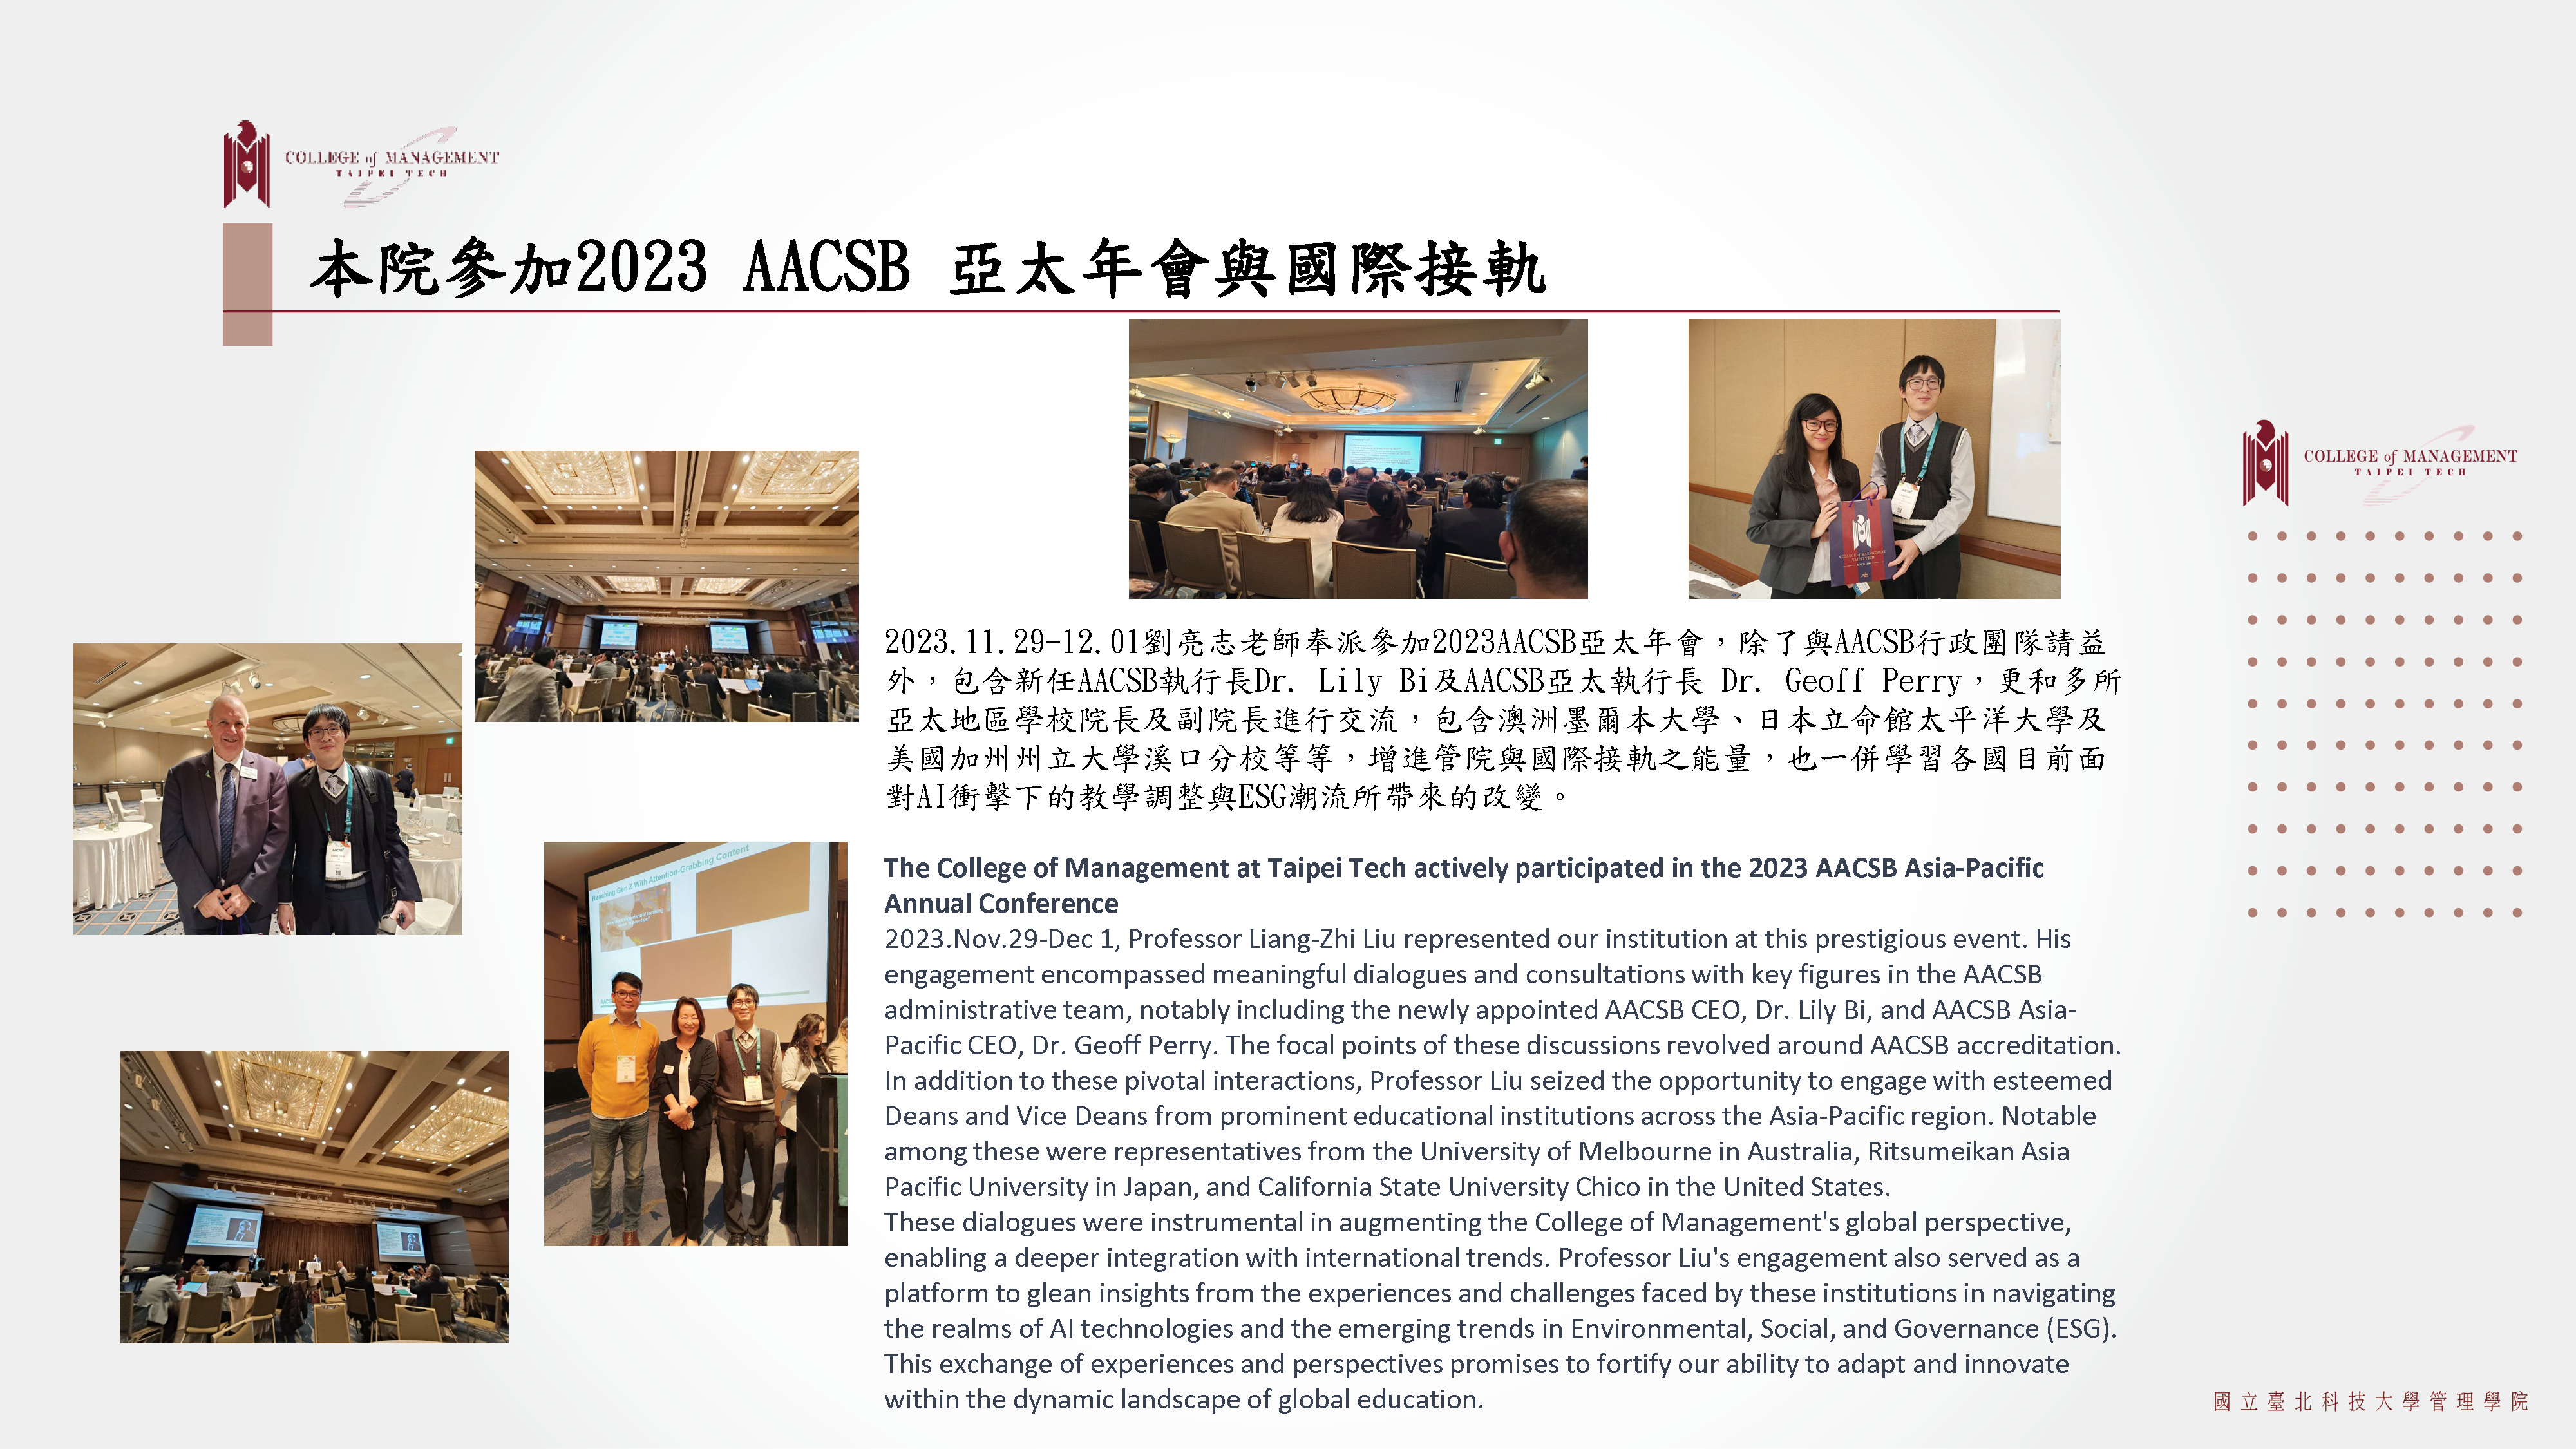 北科大管理學院參加2023 AACSB 亞太年會與國際接軌